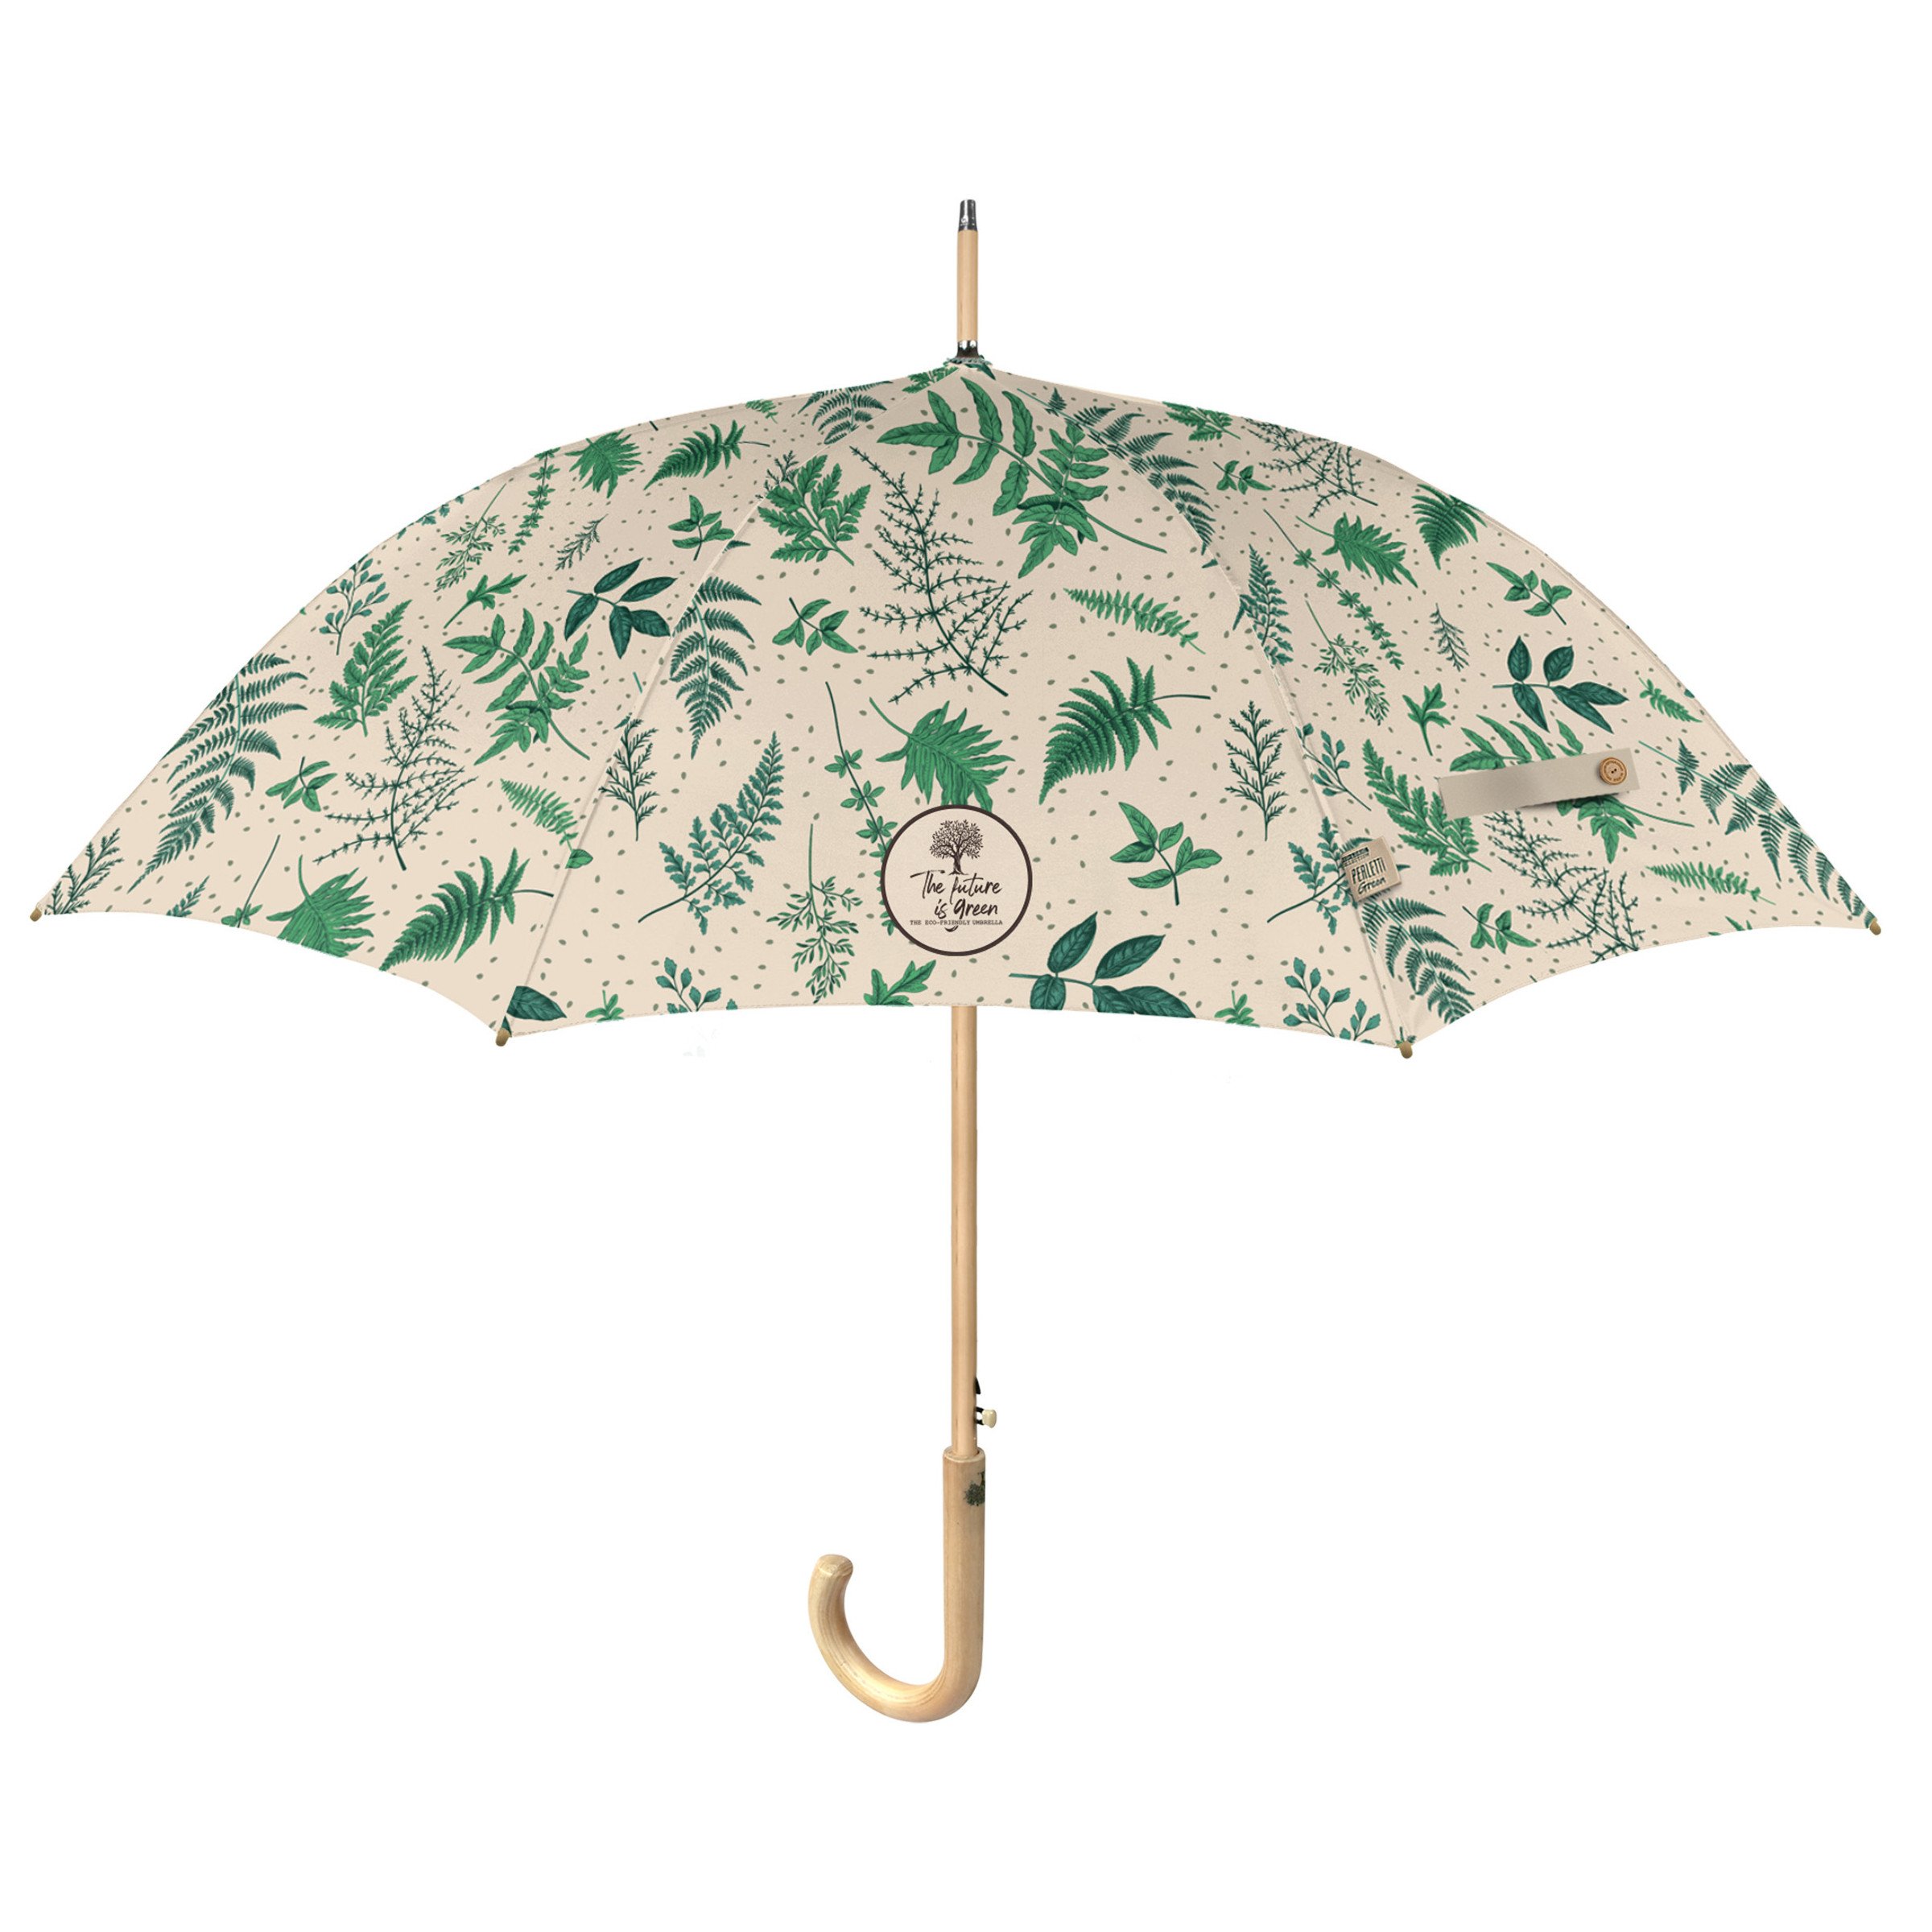 Paraguas automático Colección ECO Diseño Vegetal - Paraguas Mujer, Paraguas Originales - Que puedo Regalar